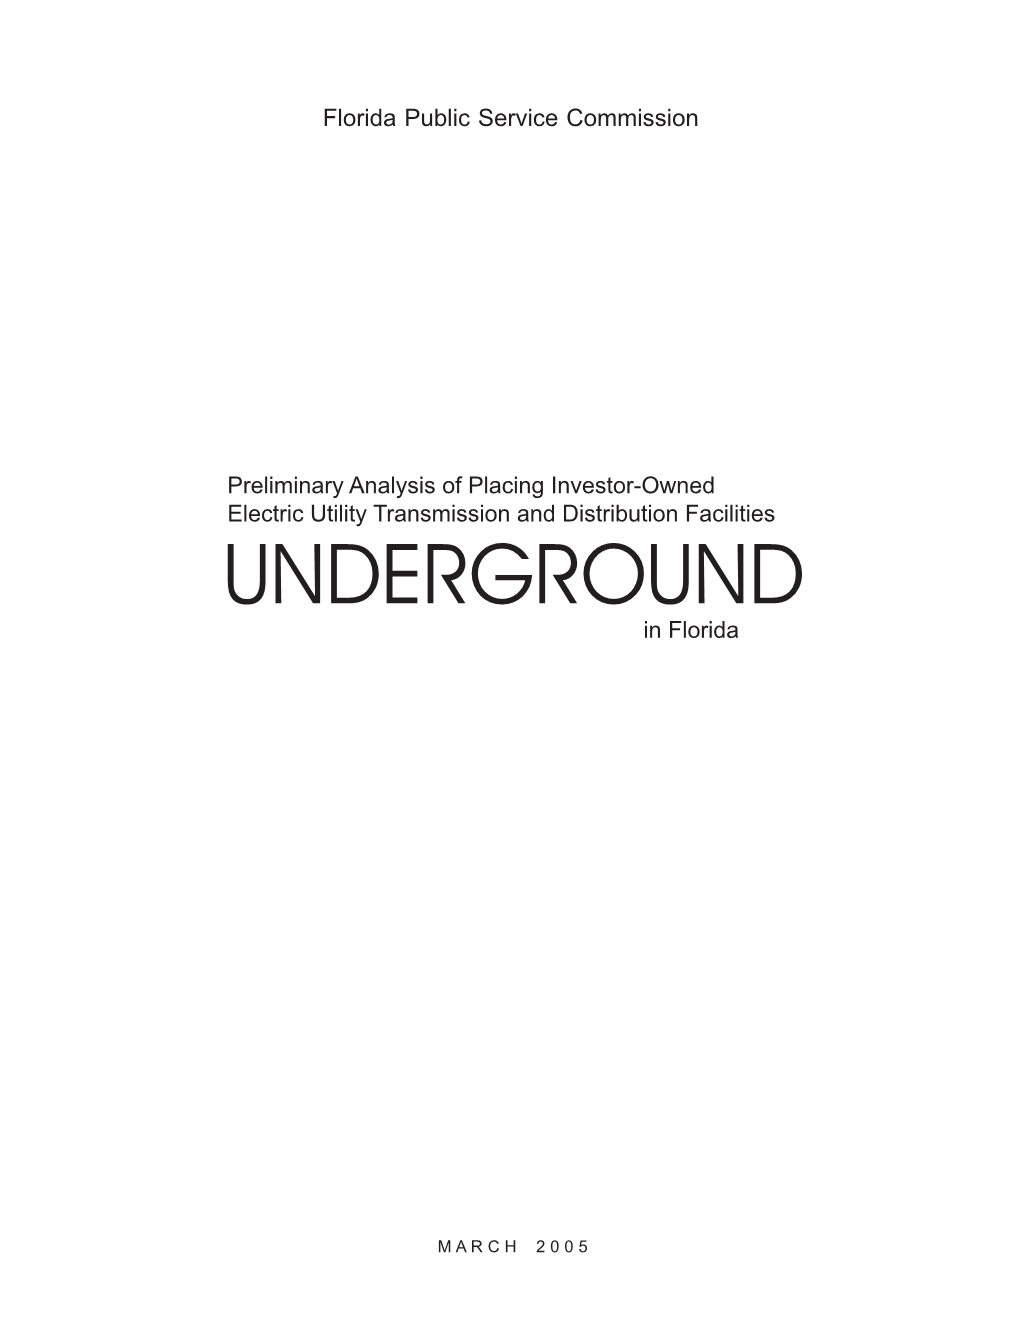 Underground Wiring Report0307draft.Pmd